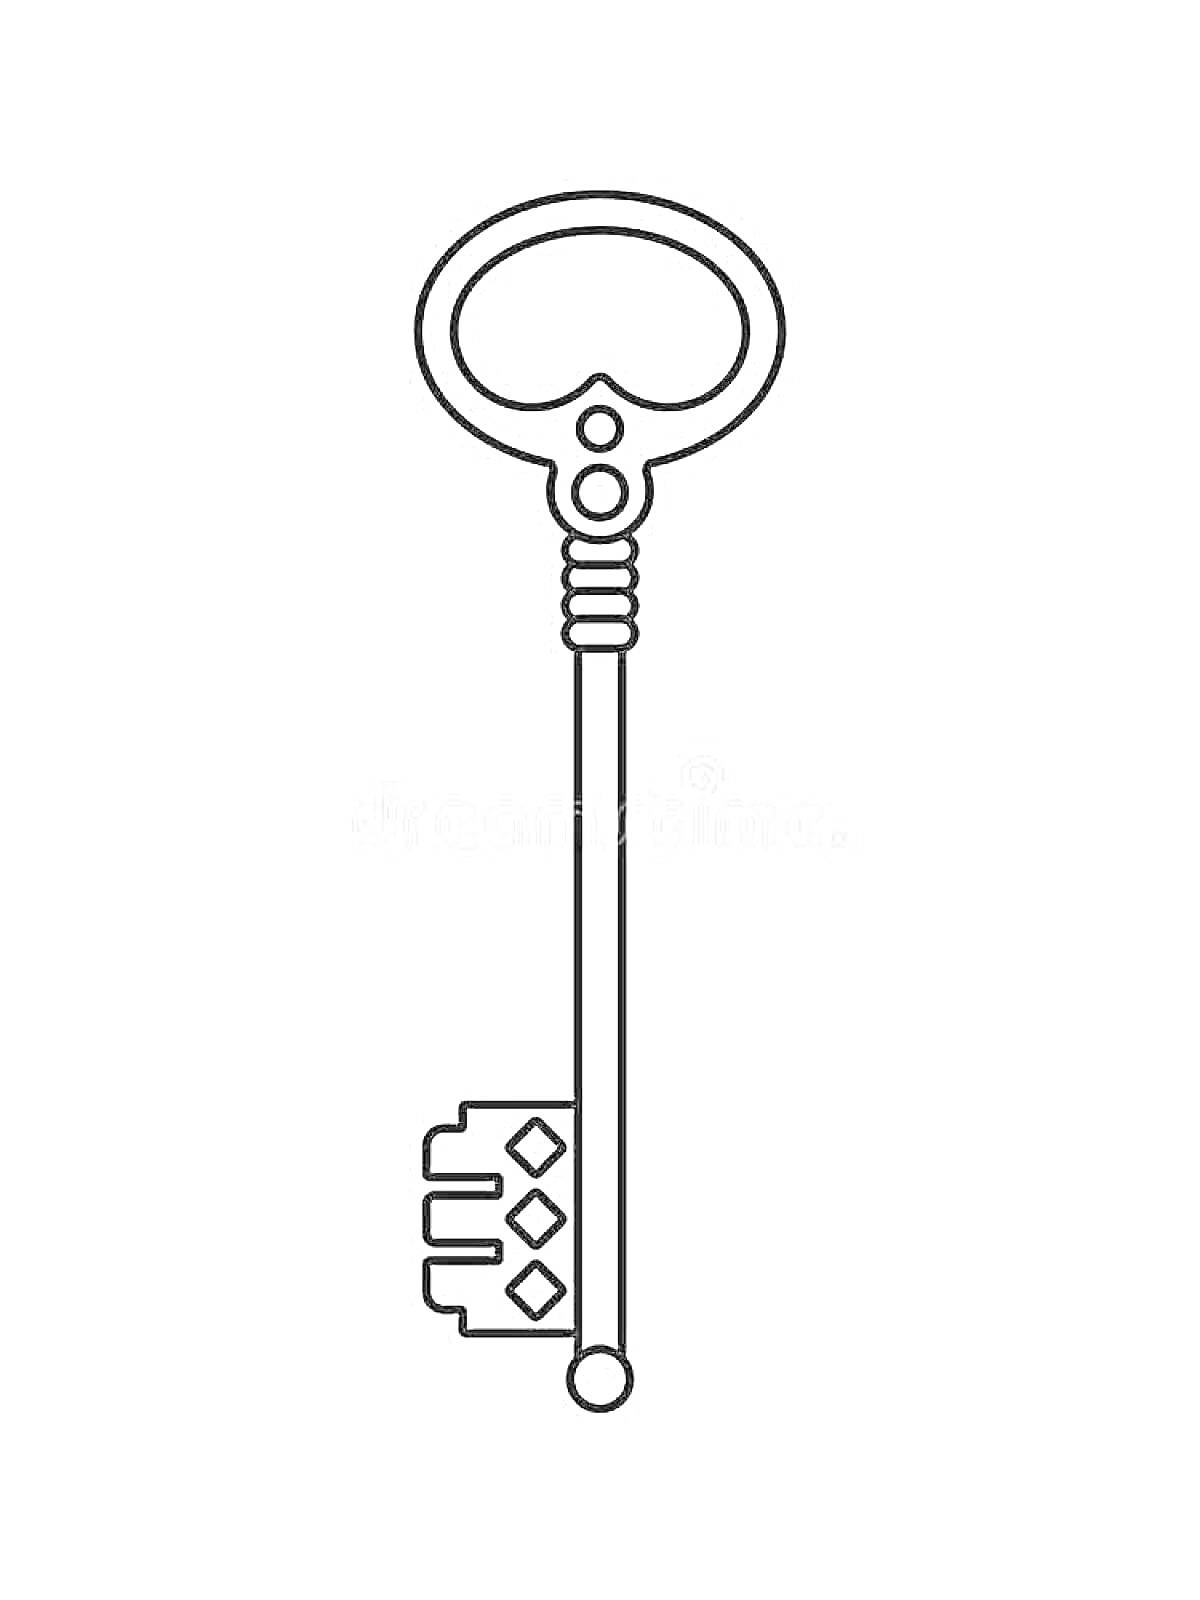 РаскраскаКлюч с декоративной рукояткой и геометрическими элементами